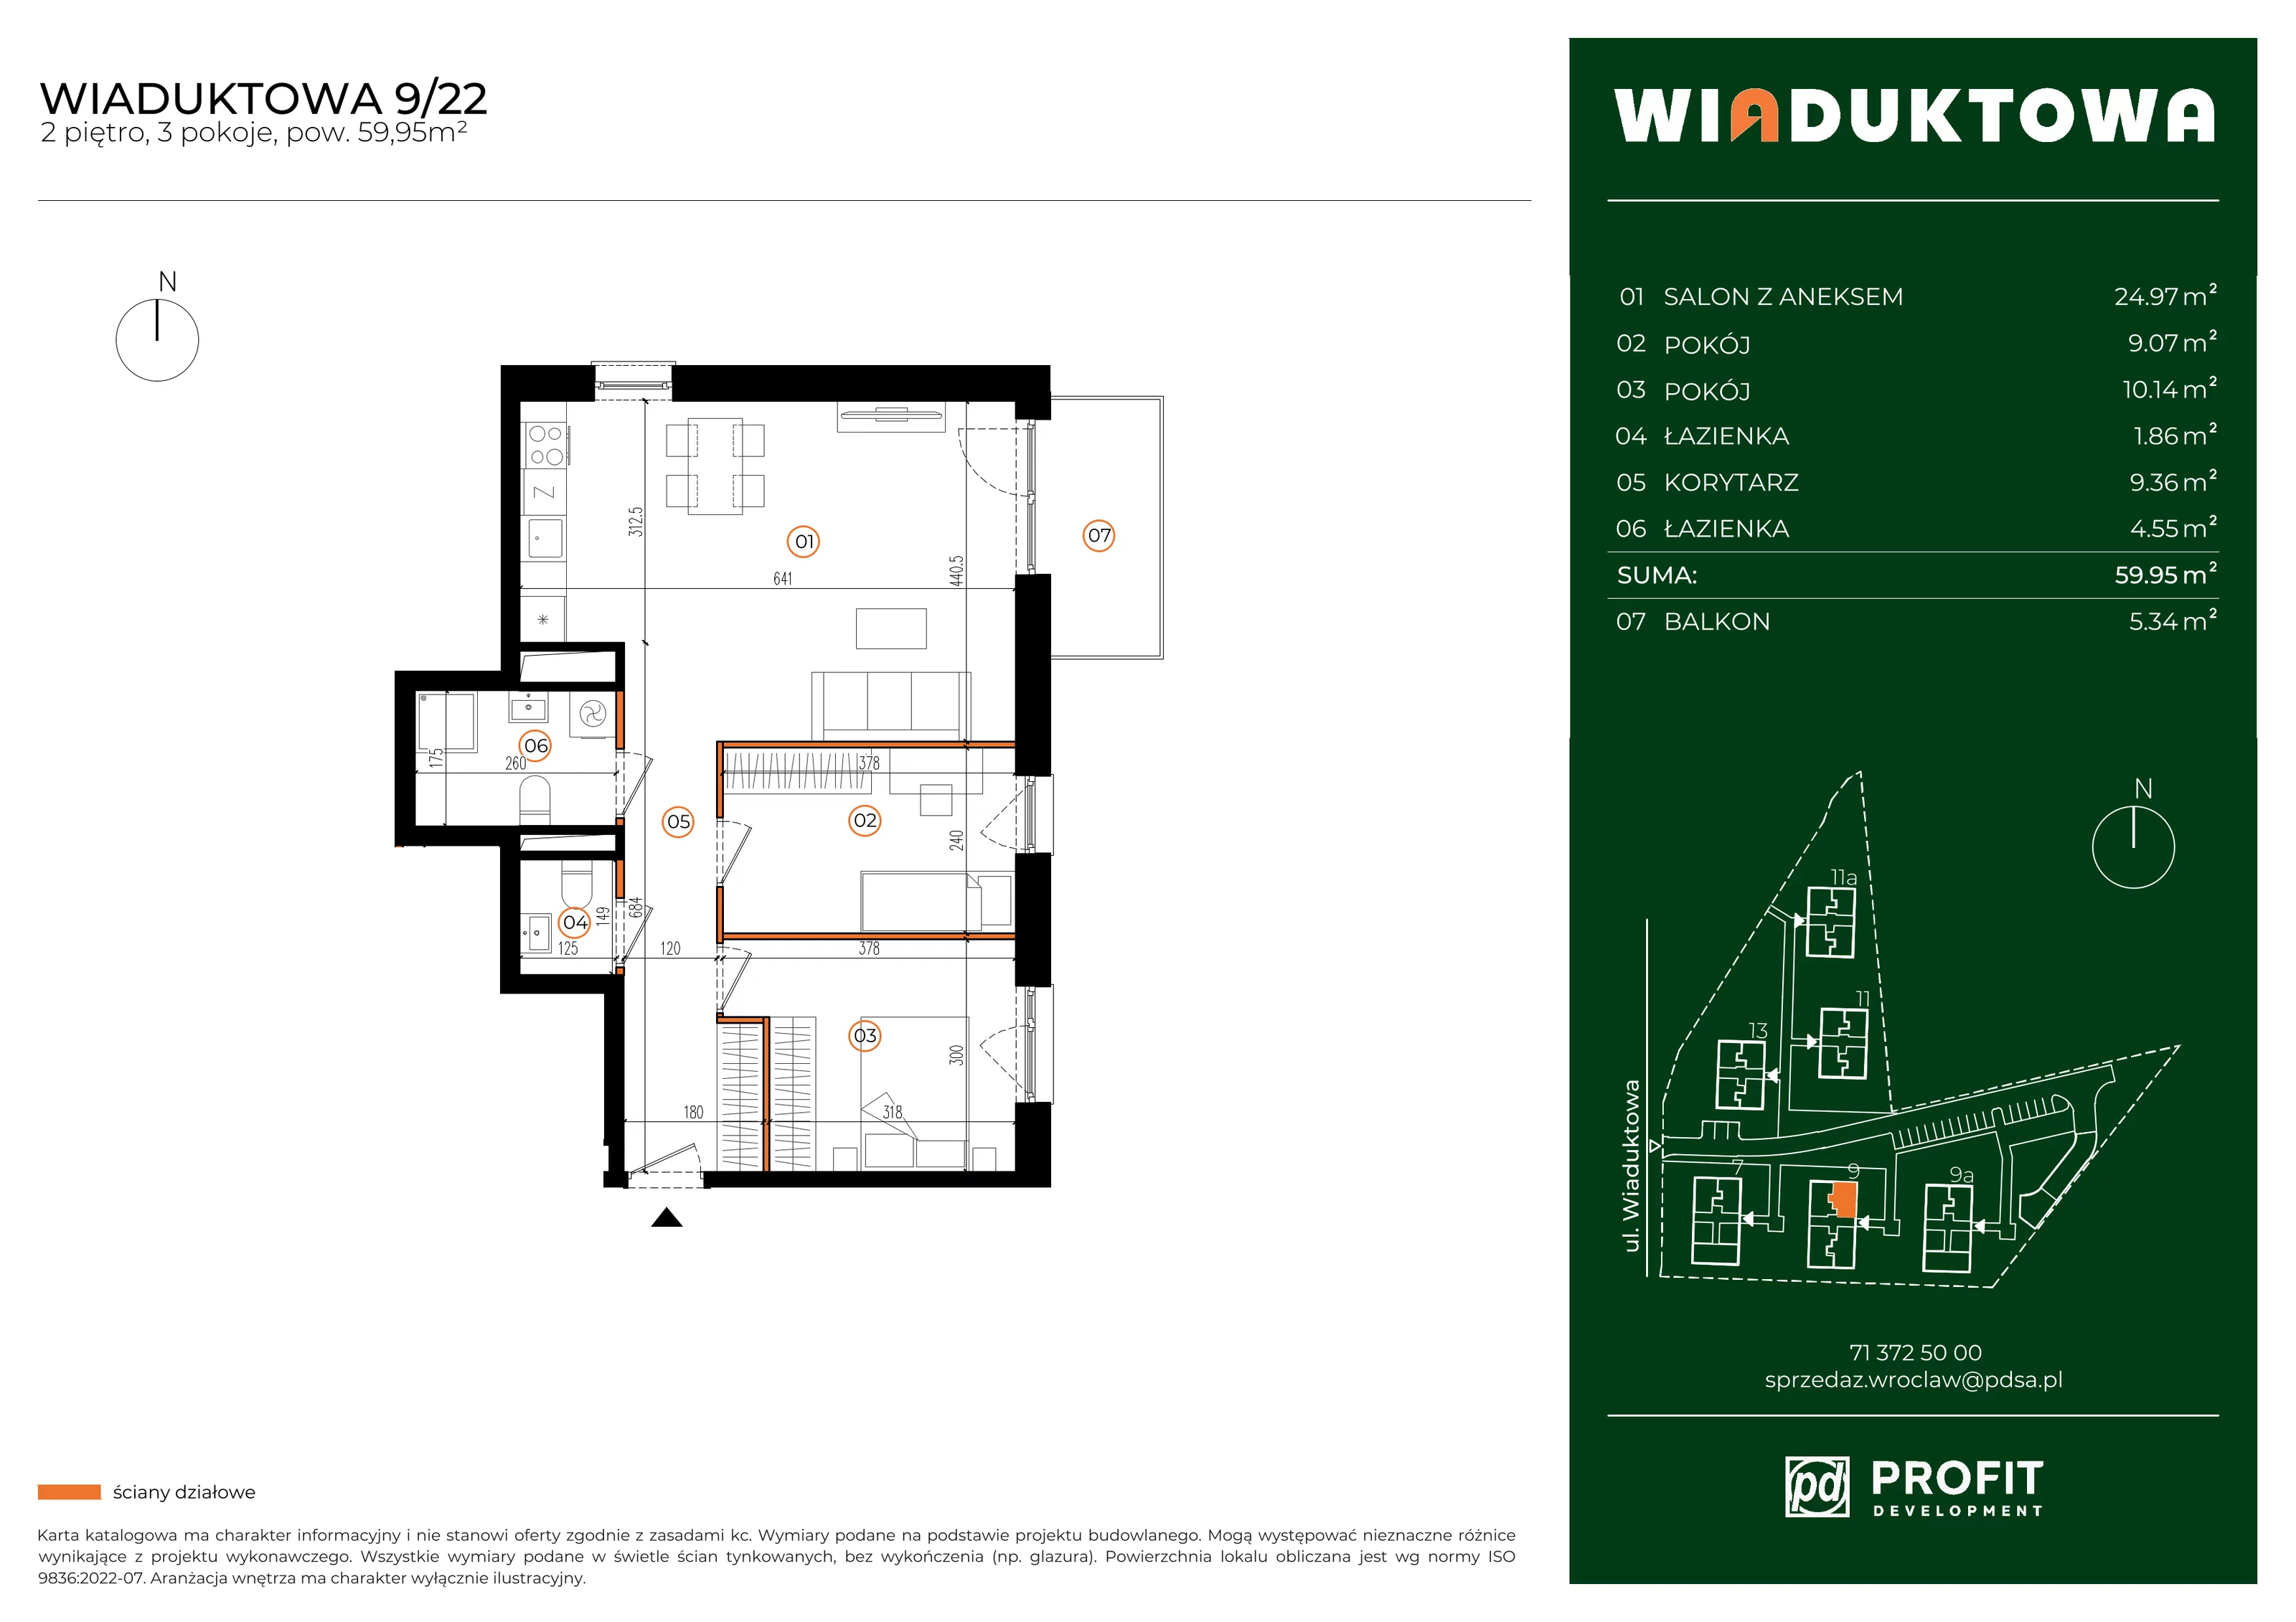 Mieszkanie 59,95 m², piętro 2, oferta nr WI/9/22, Wiaduktowa, Wrocław, Krzyki-Partynice, Krzyki, ul. Wiaduktowa